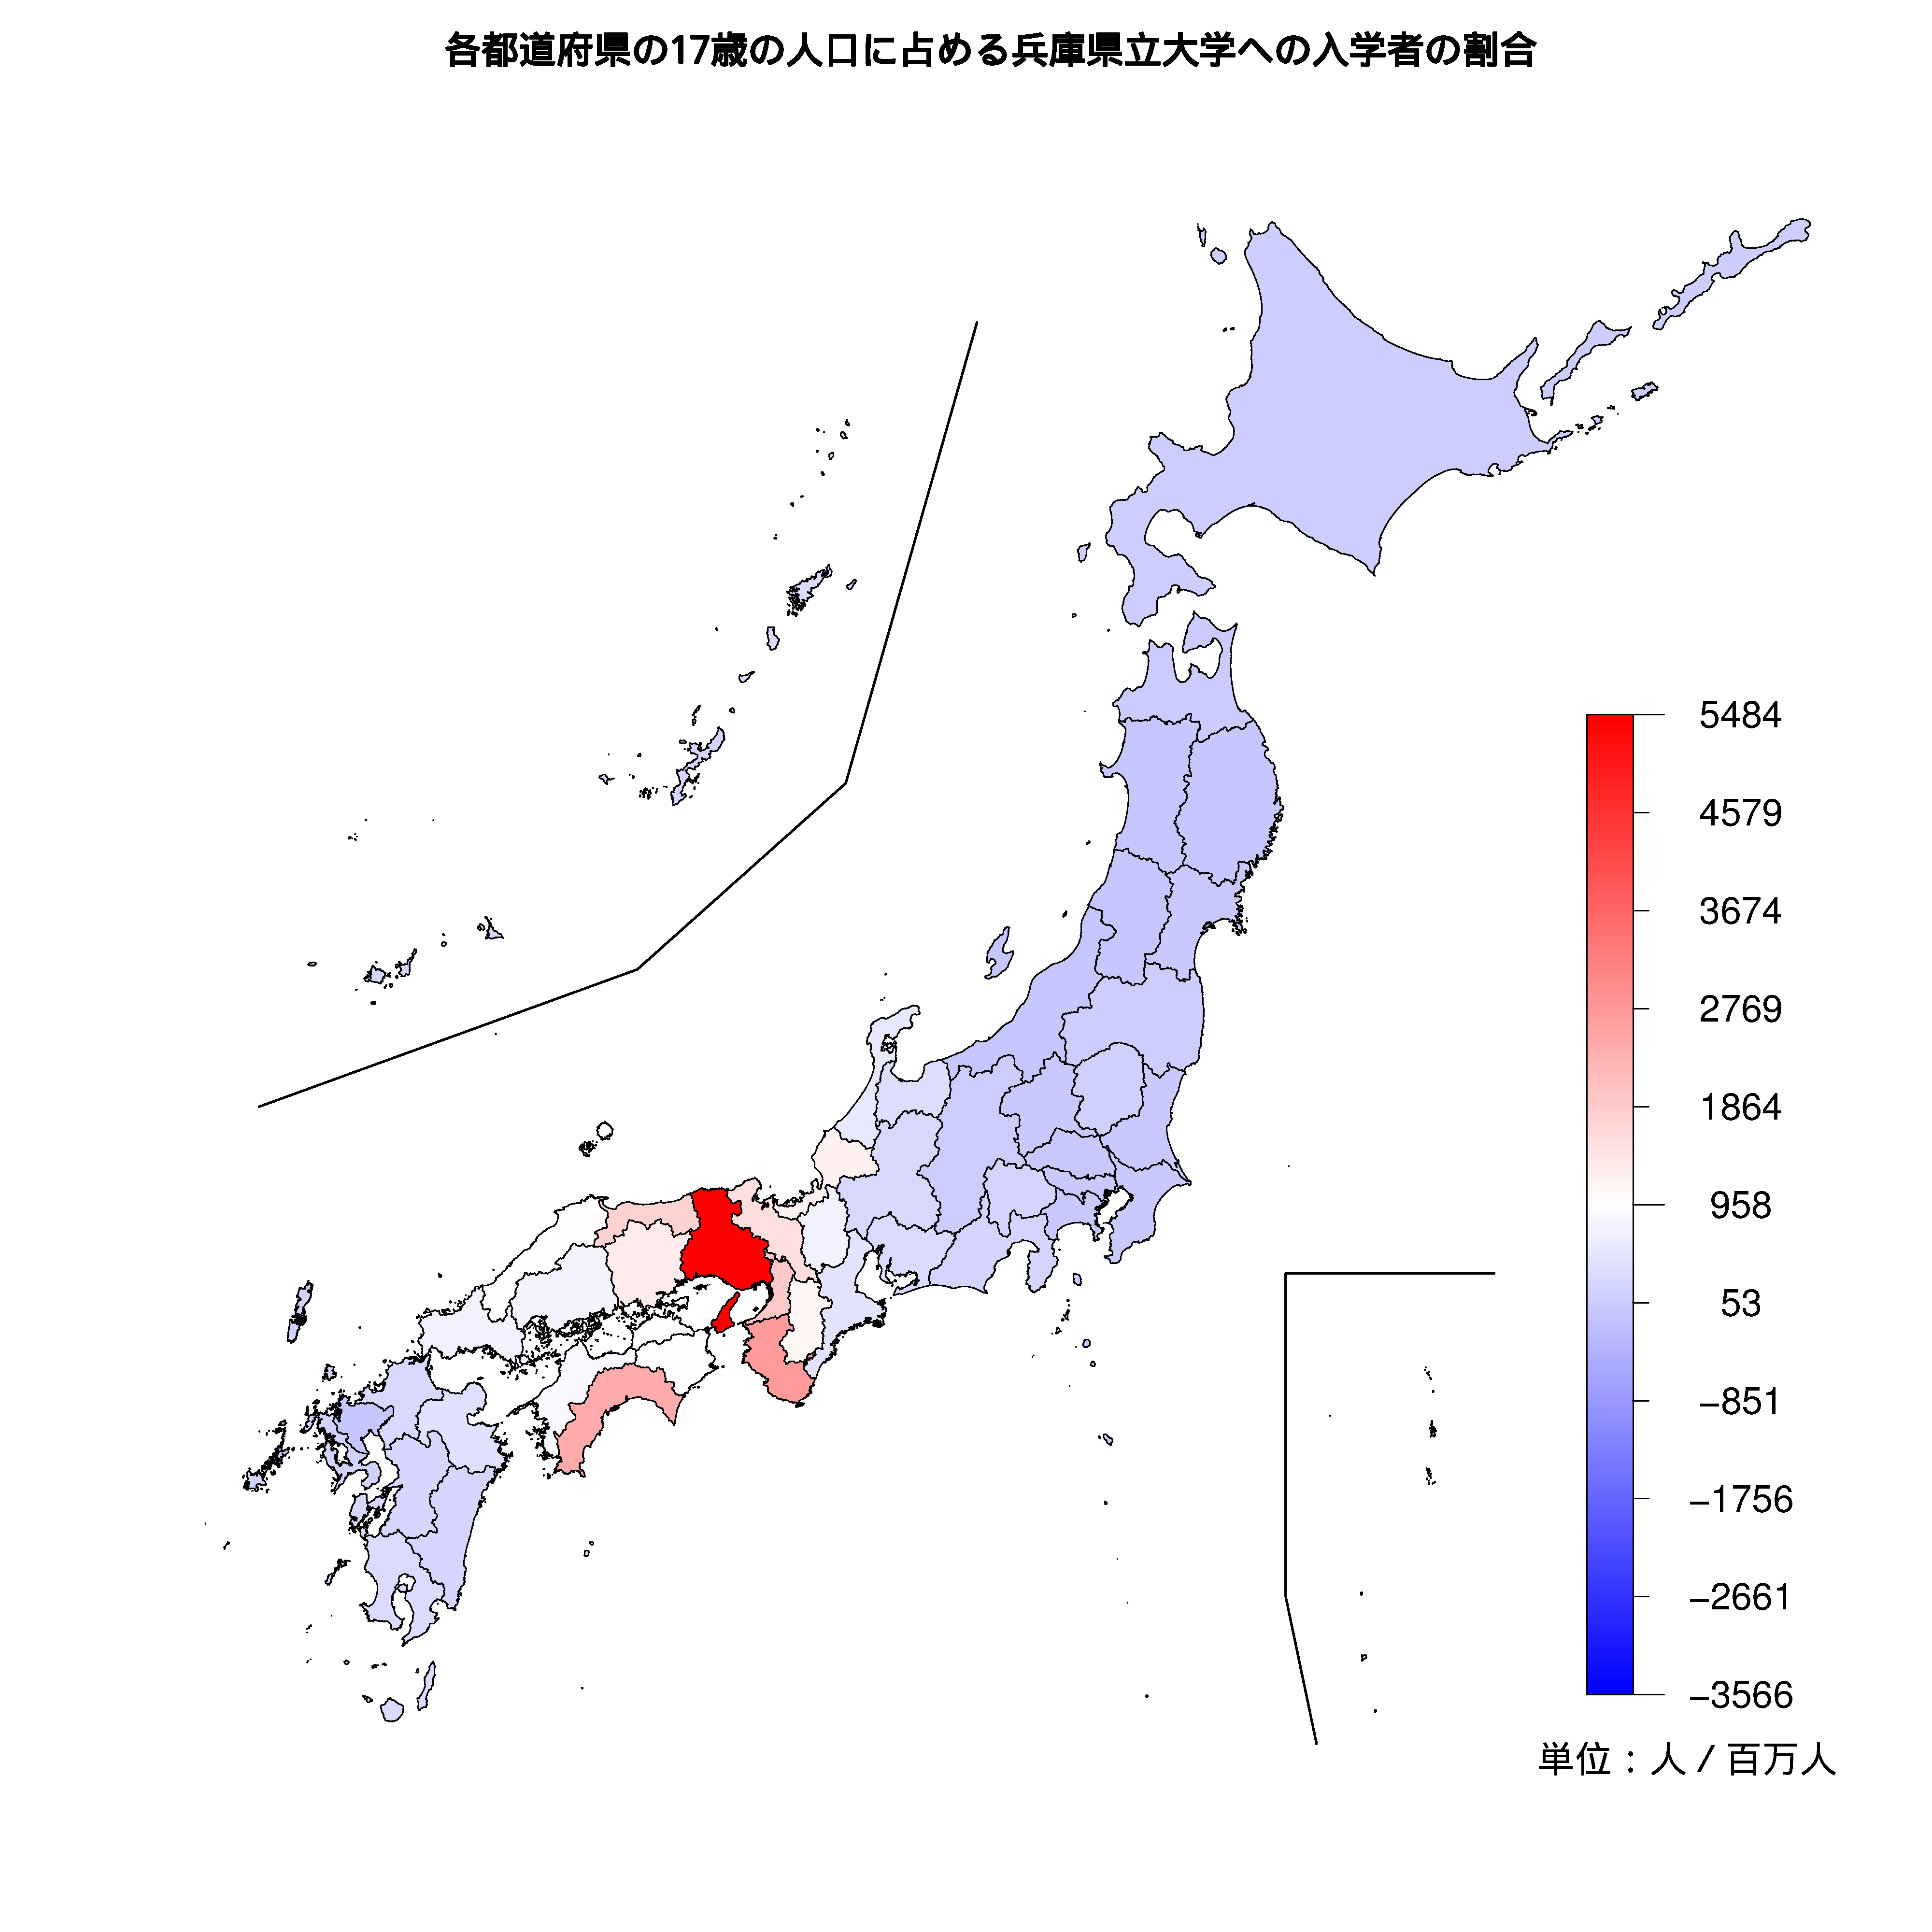 兵庫県立大学への入学者が多い都道府県の色分け地図